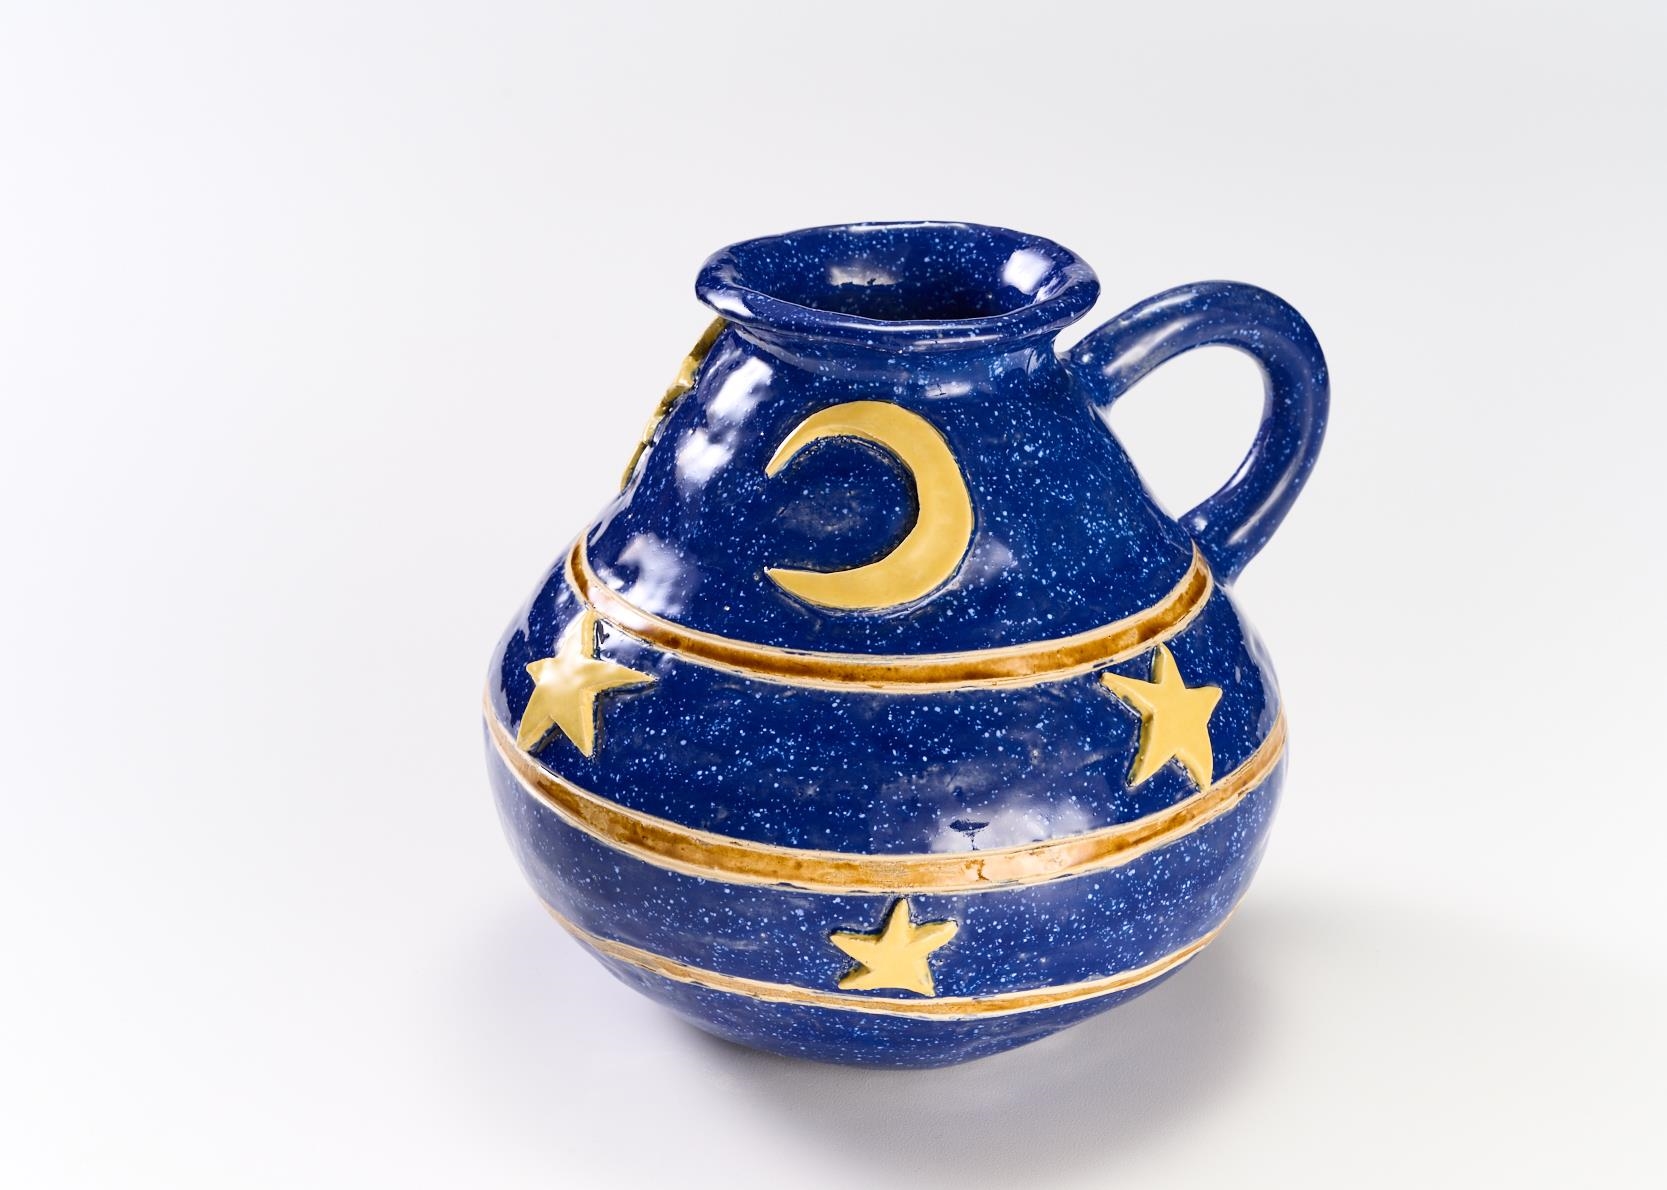 Keramik all inclusive_32 (Keramikmuseum Westerwald / Helge Articus)